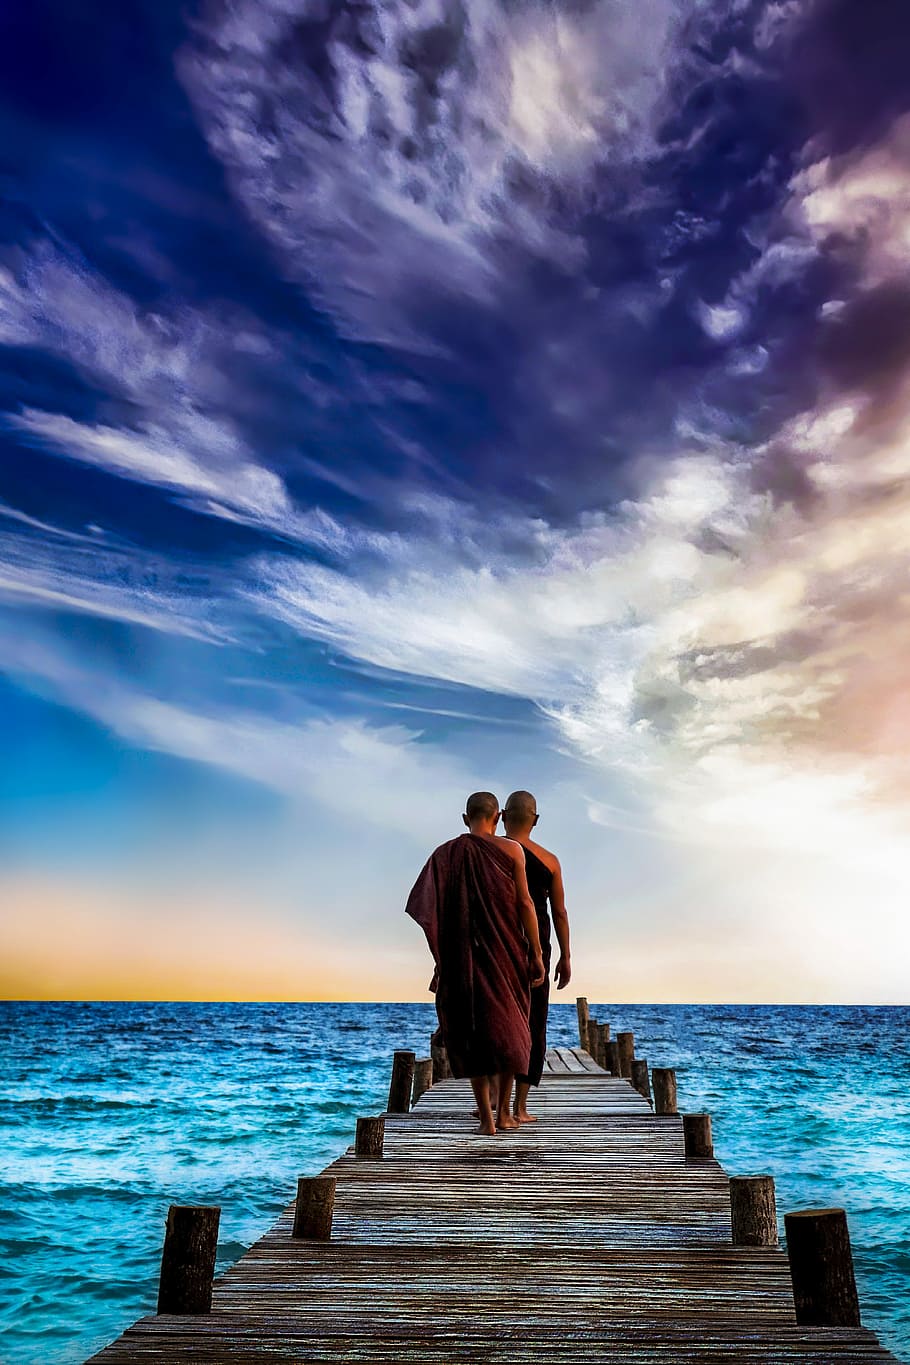 two monks walking on wooden dock, water, sunset, sea, sky, ocean